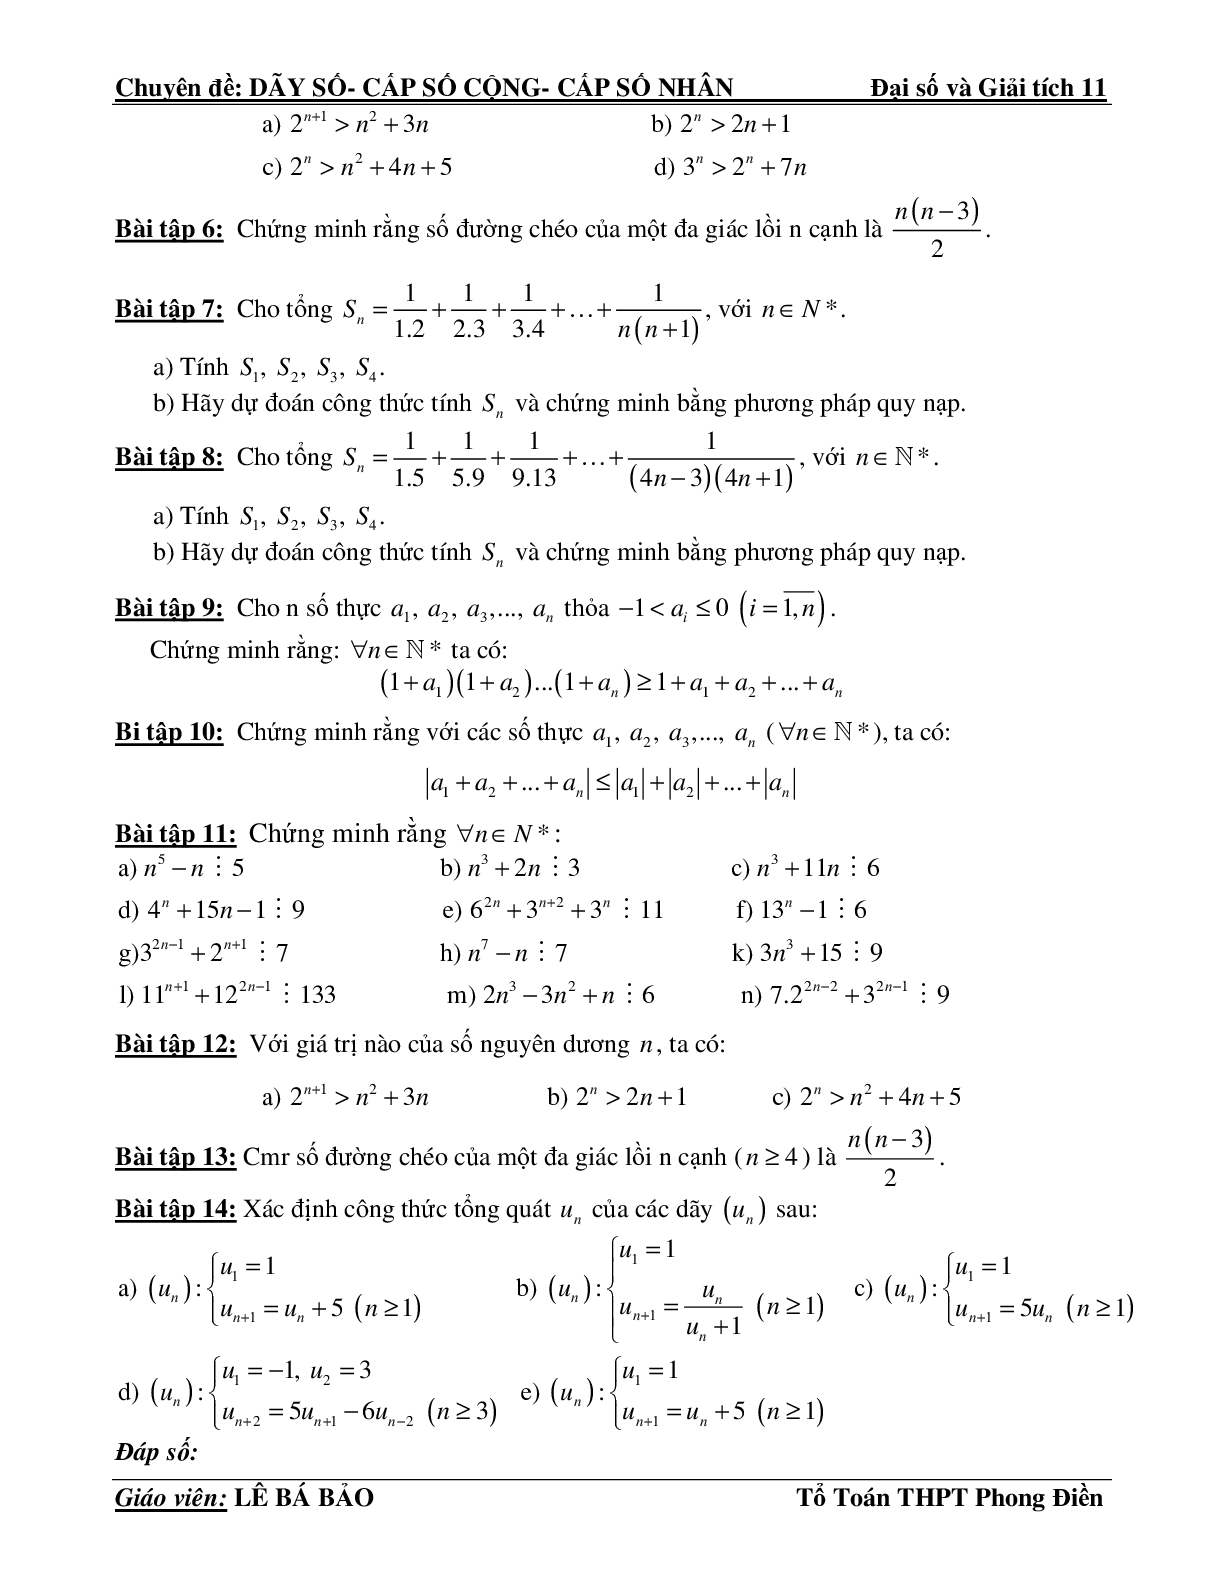 Bài tập phương pháp quy nạp toán học (trang 9)